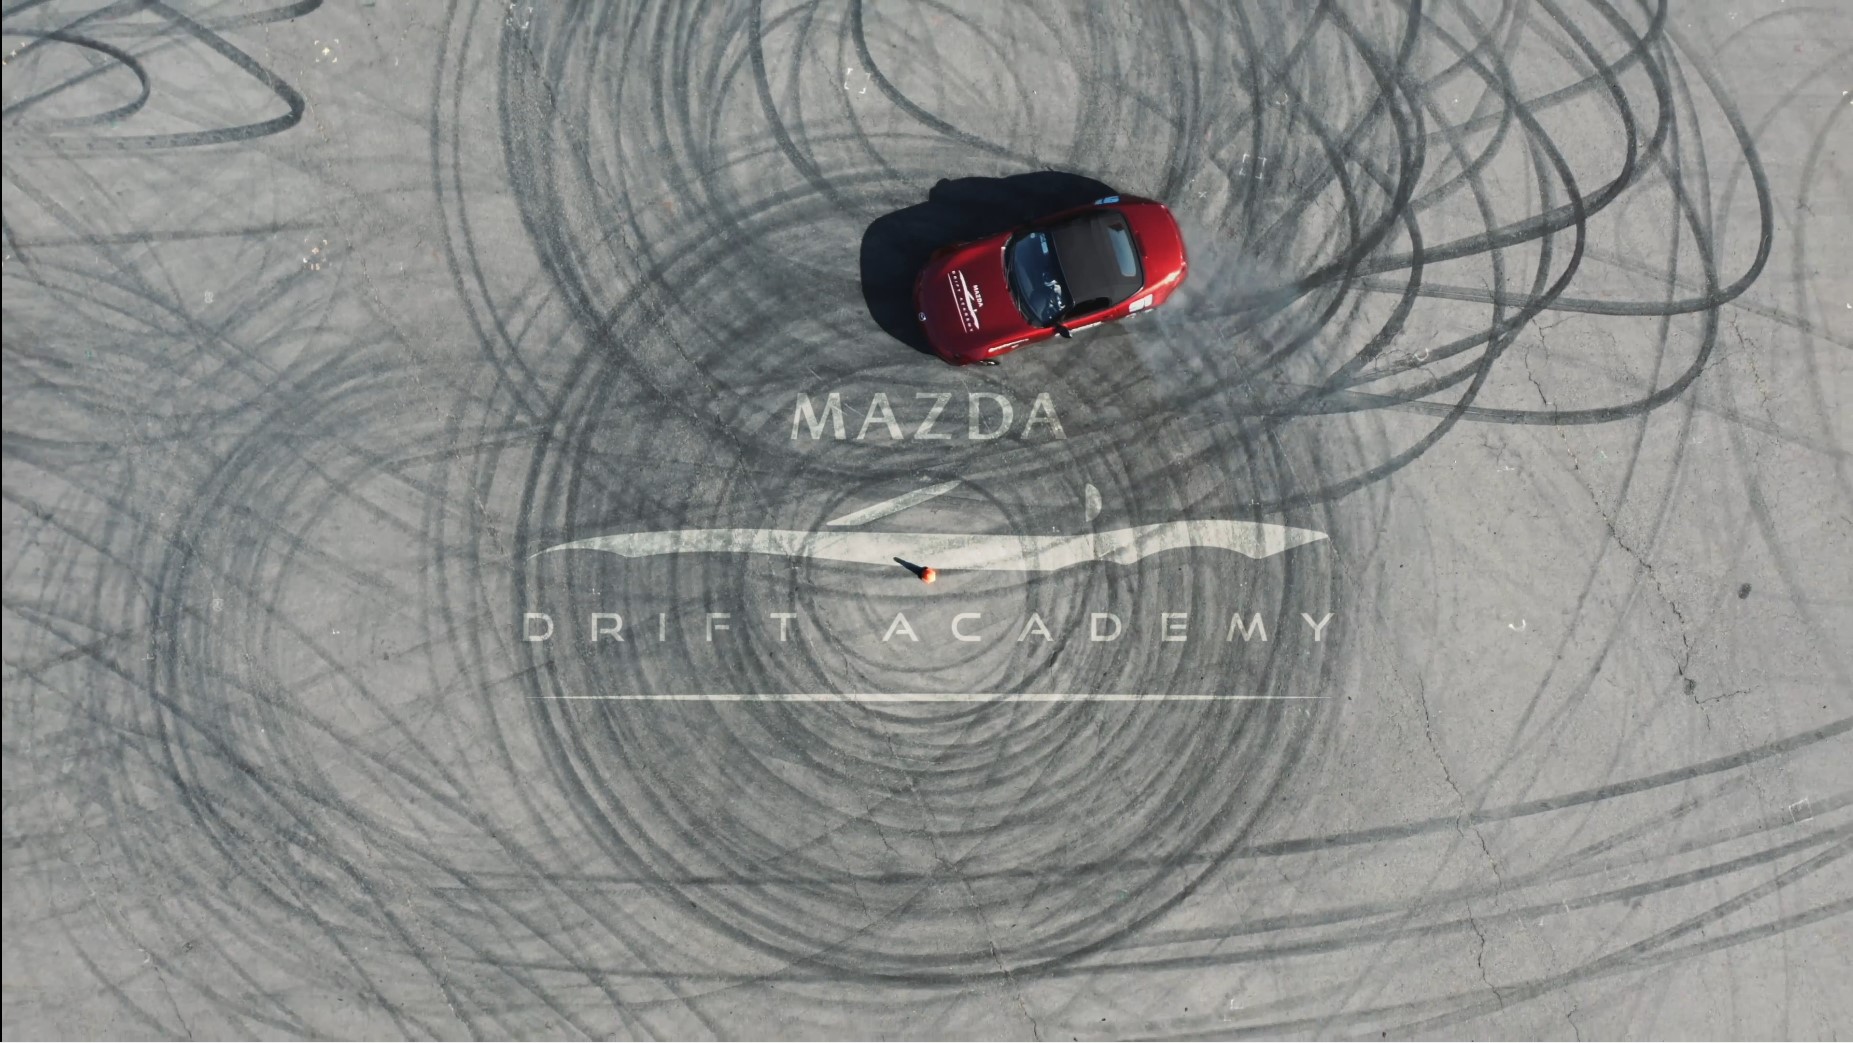 ¿Quieres aprender a driftear? Mazda te enseñará a hacerlo con el MX-5